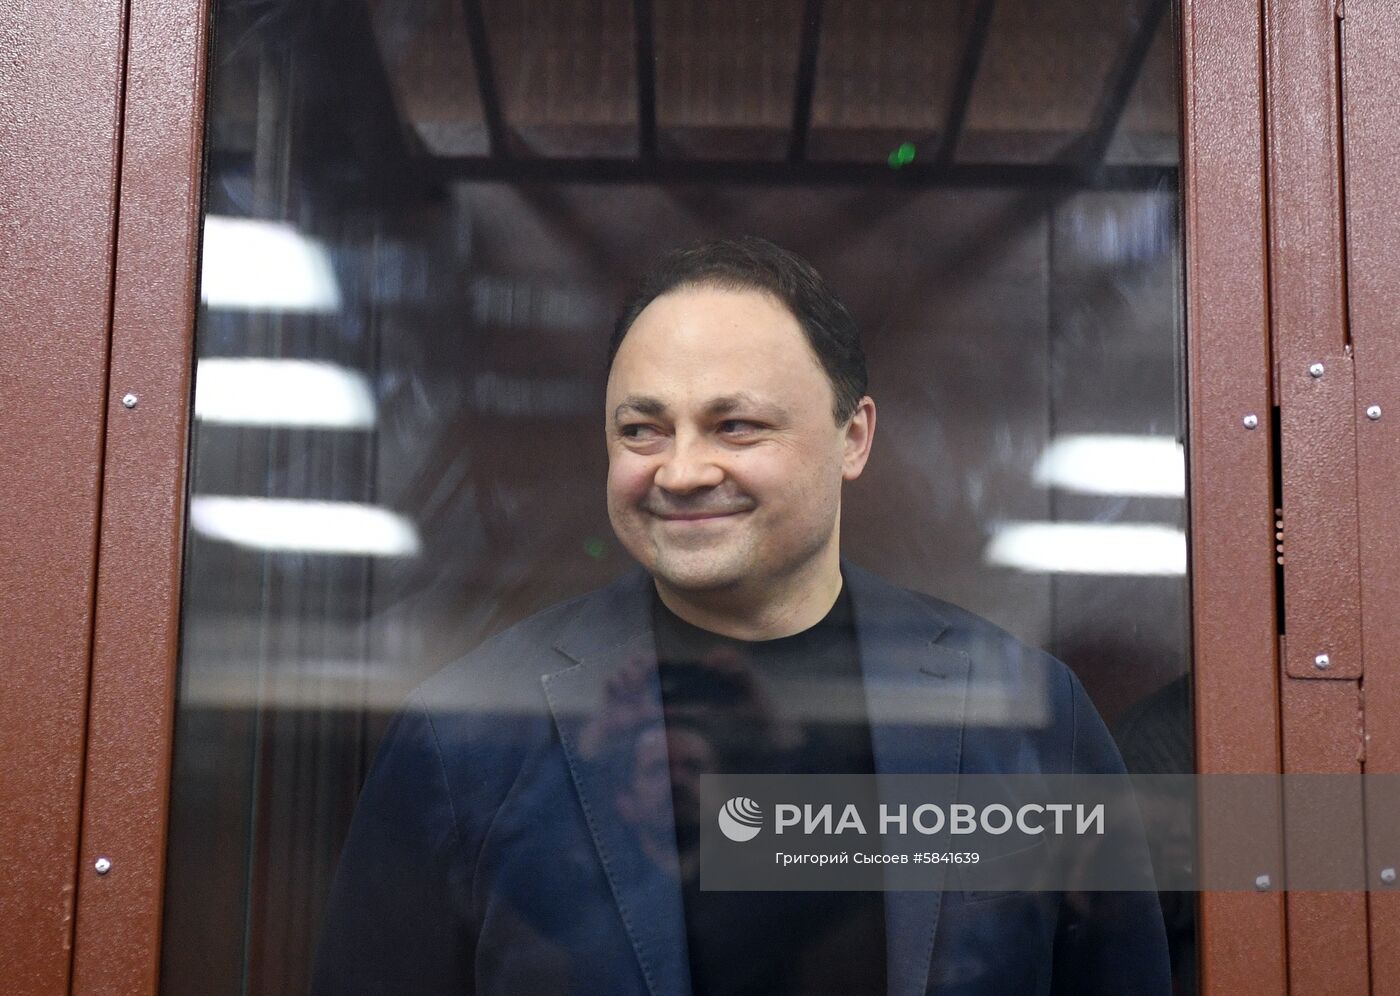 Оглашение приговора бывшему мэру Владивостока И. Пушкареву